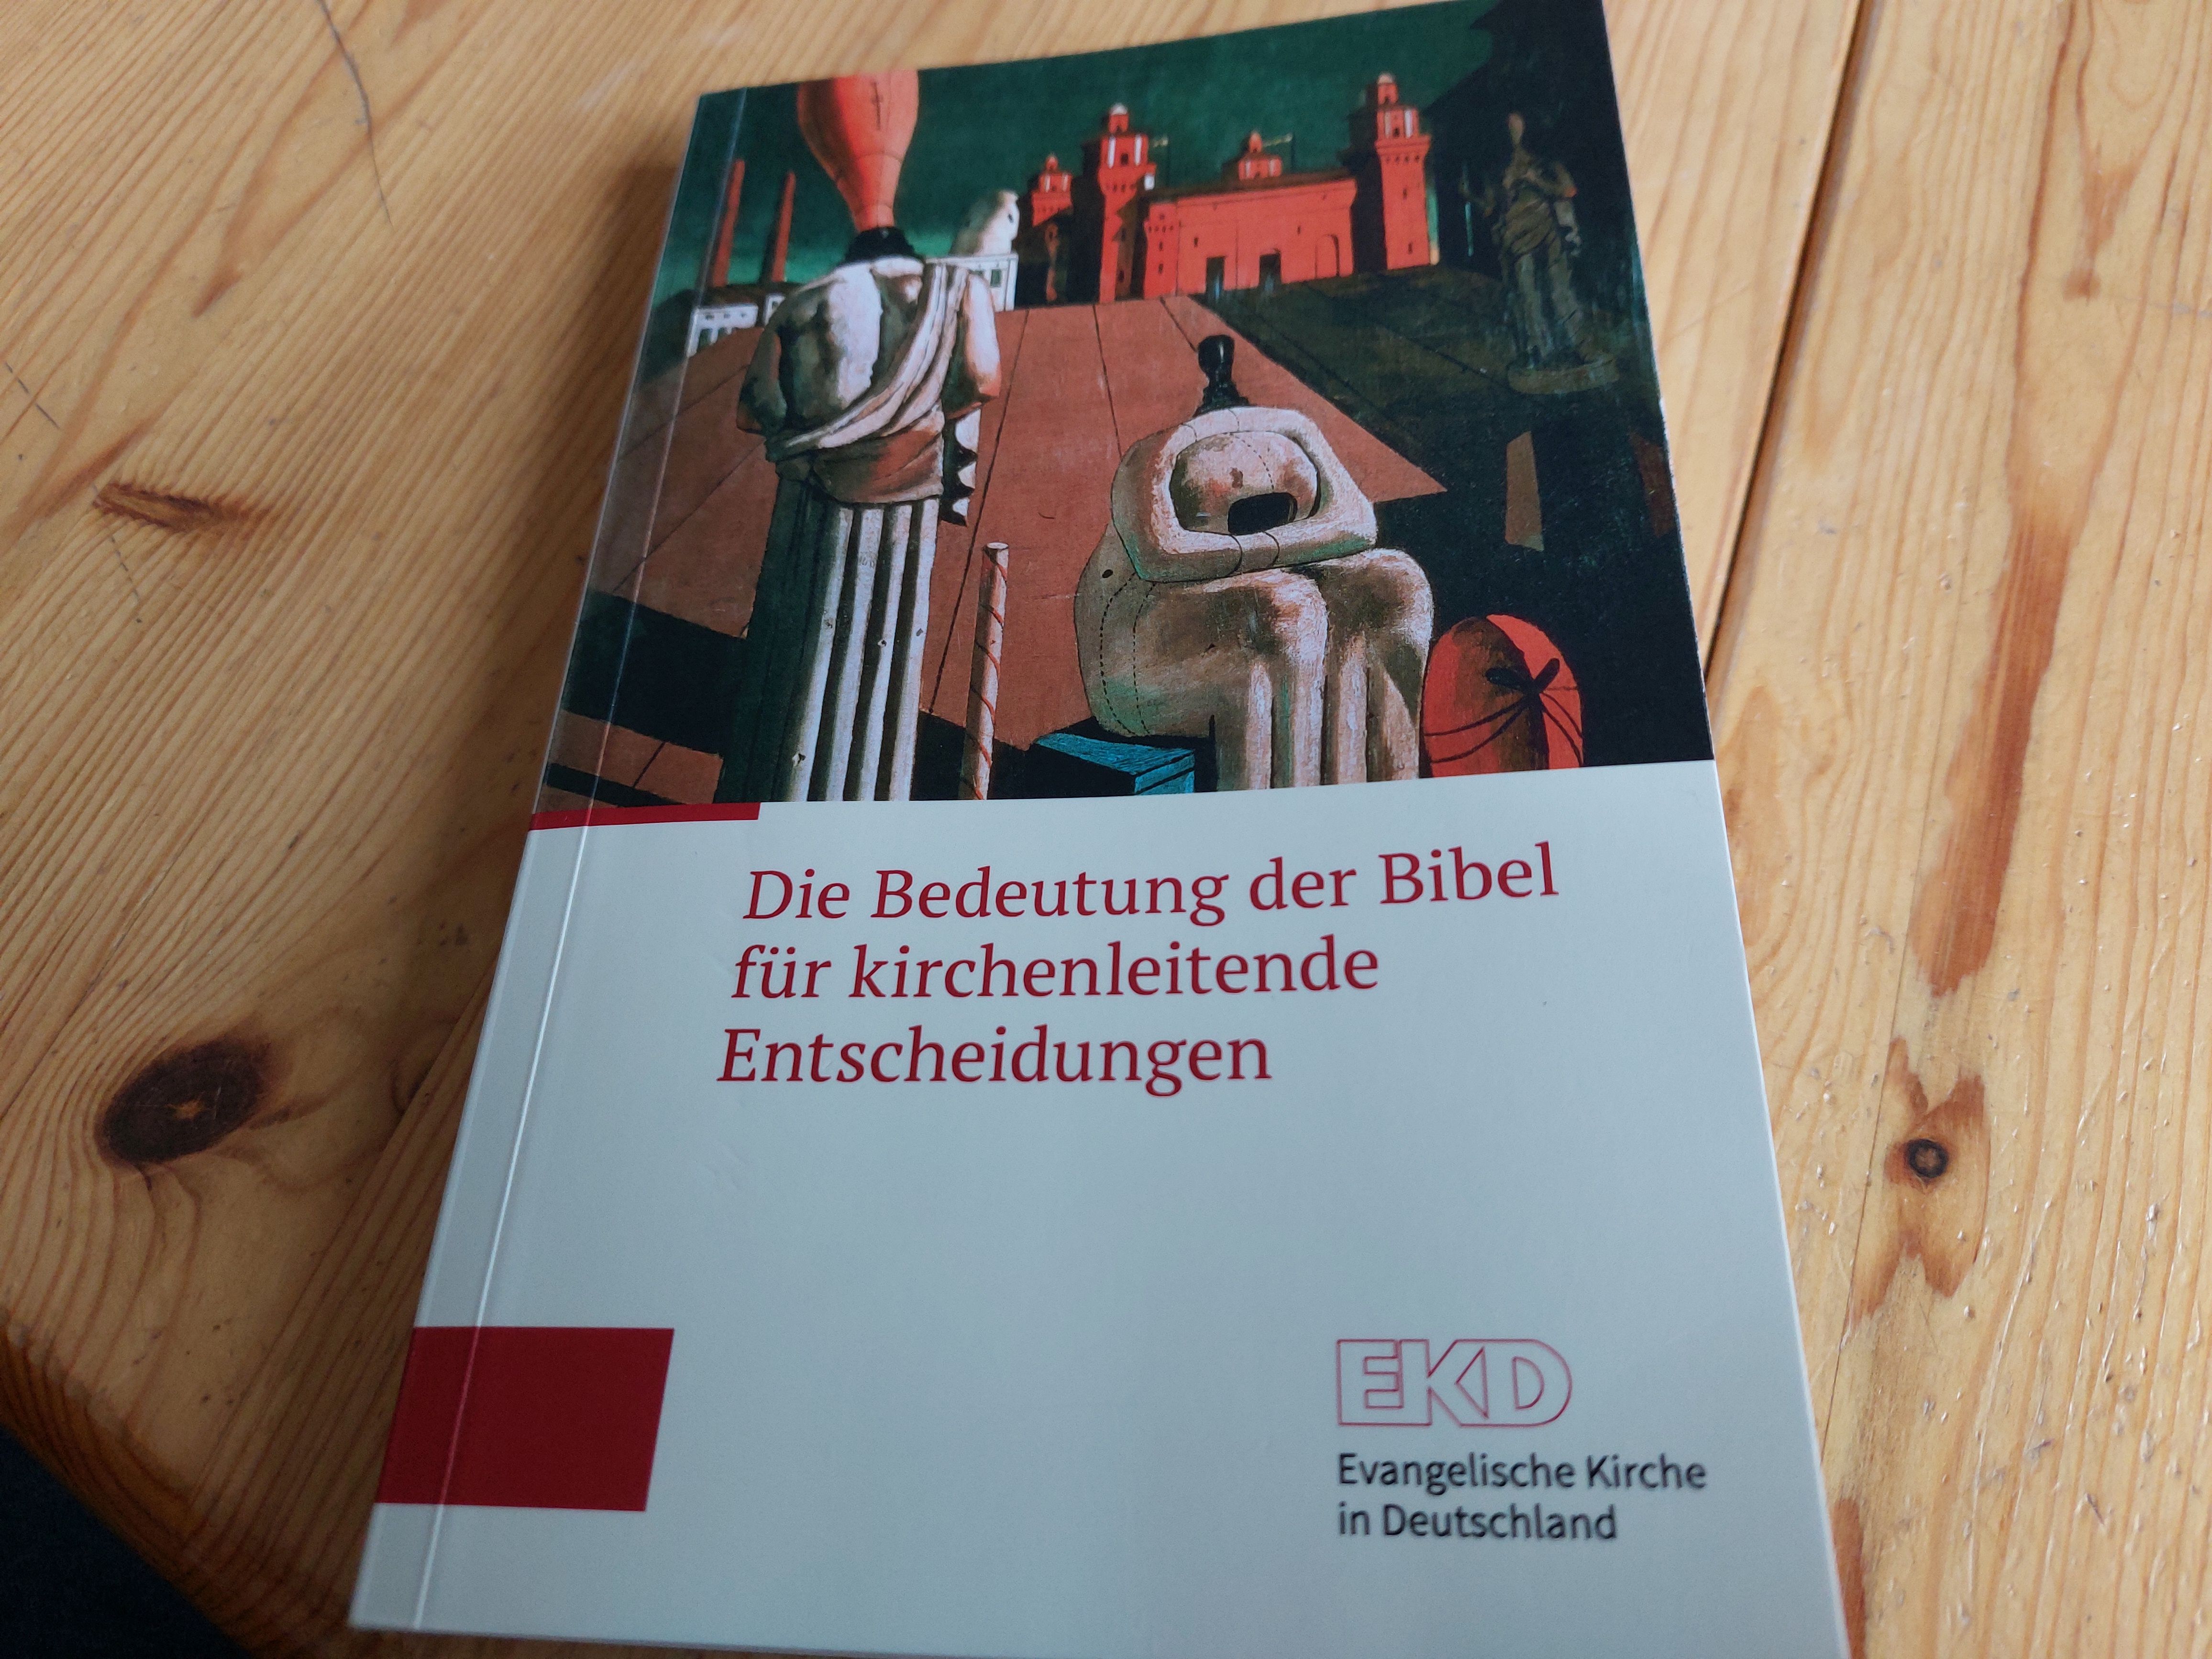 Veröffentlichung der Kammer für Theologie der EKD, Juli 2021.